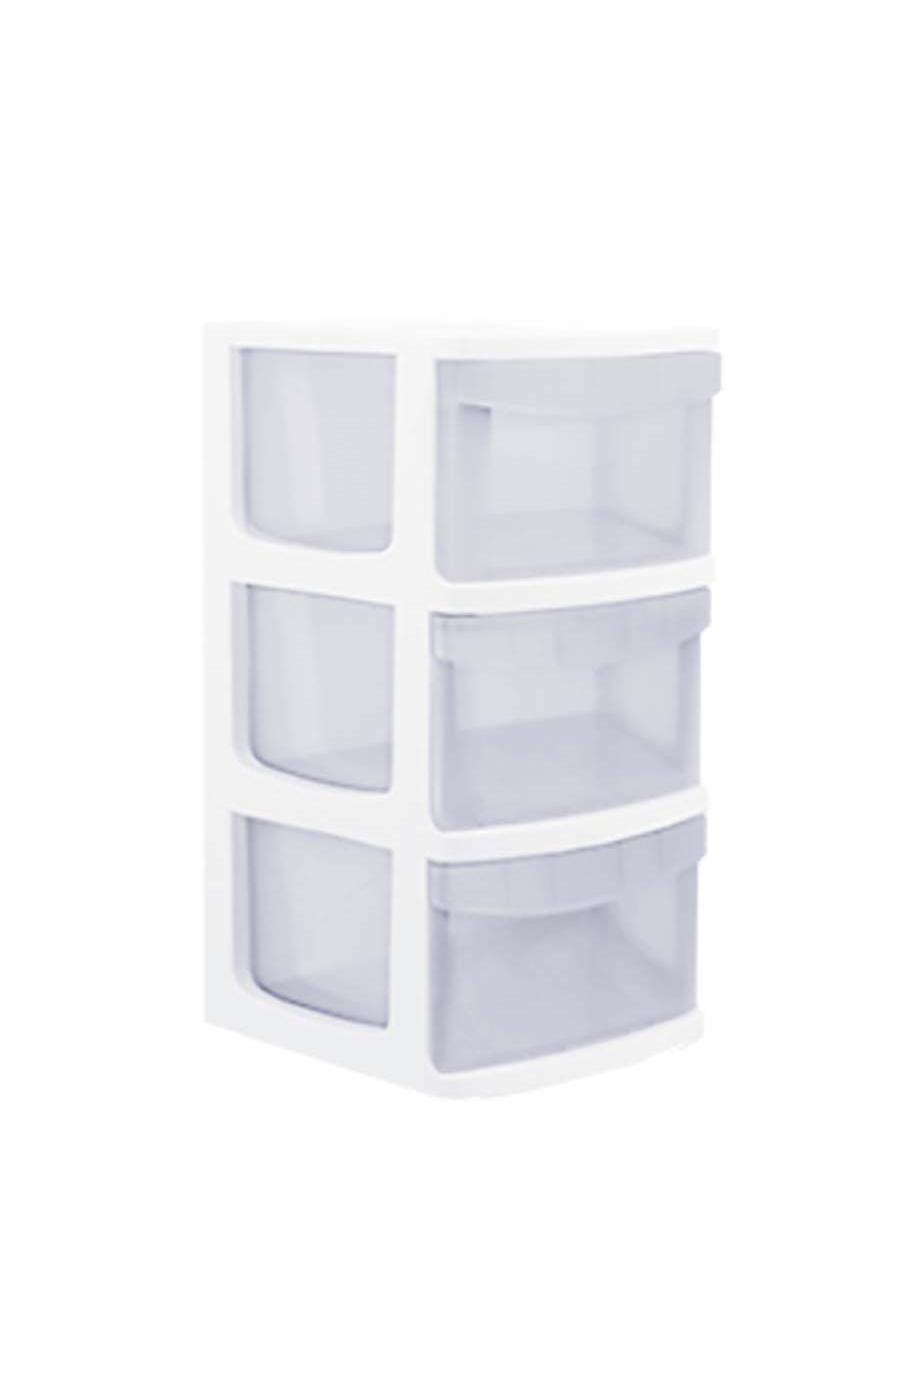 Starplast 3-Drawer Medium Plastic Storage Cart - White; image 1 of 3